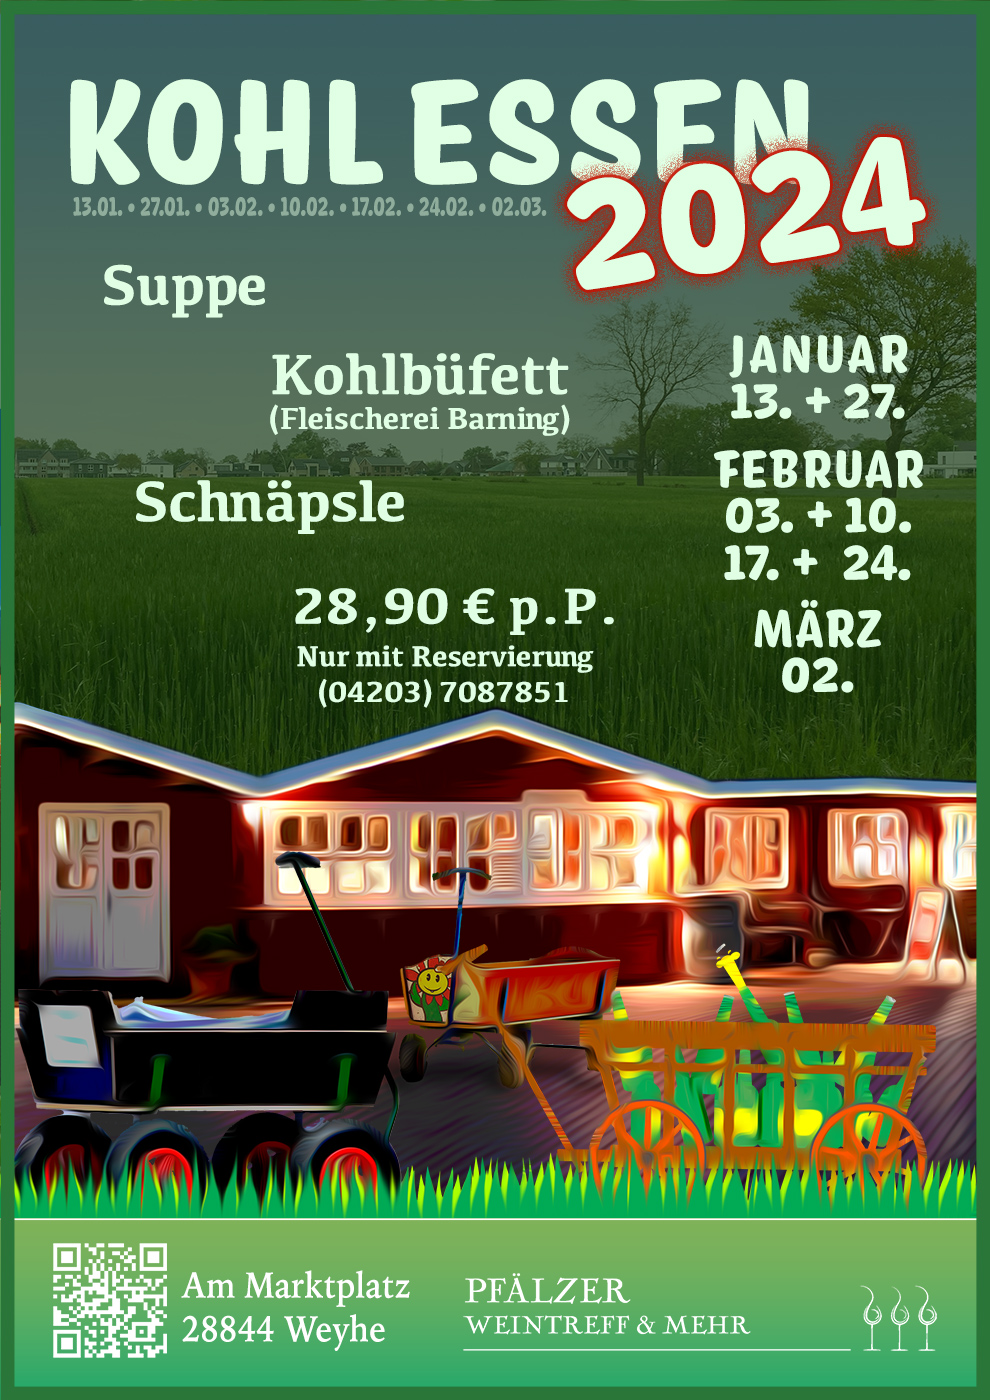 PWT Event Plakat 2022 bayerischer4